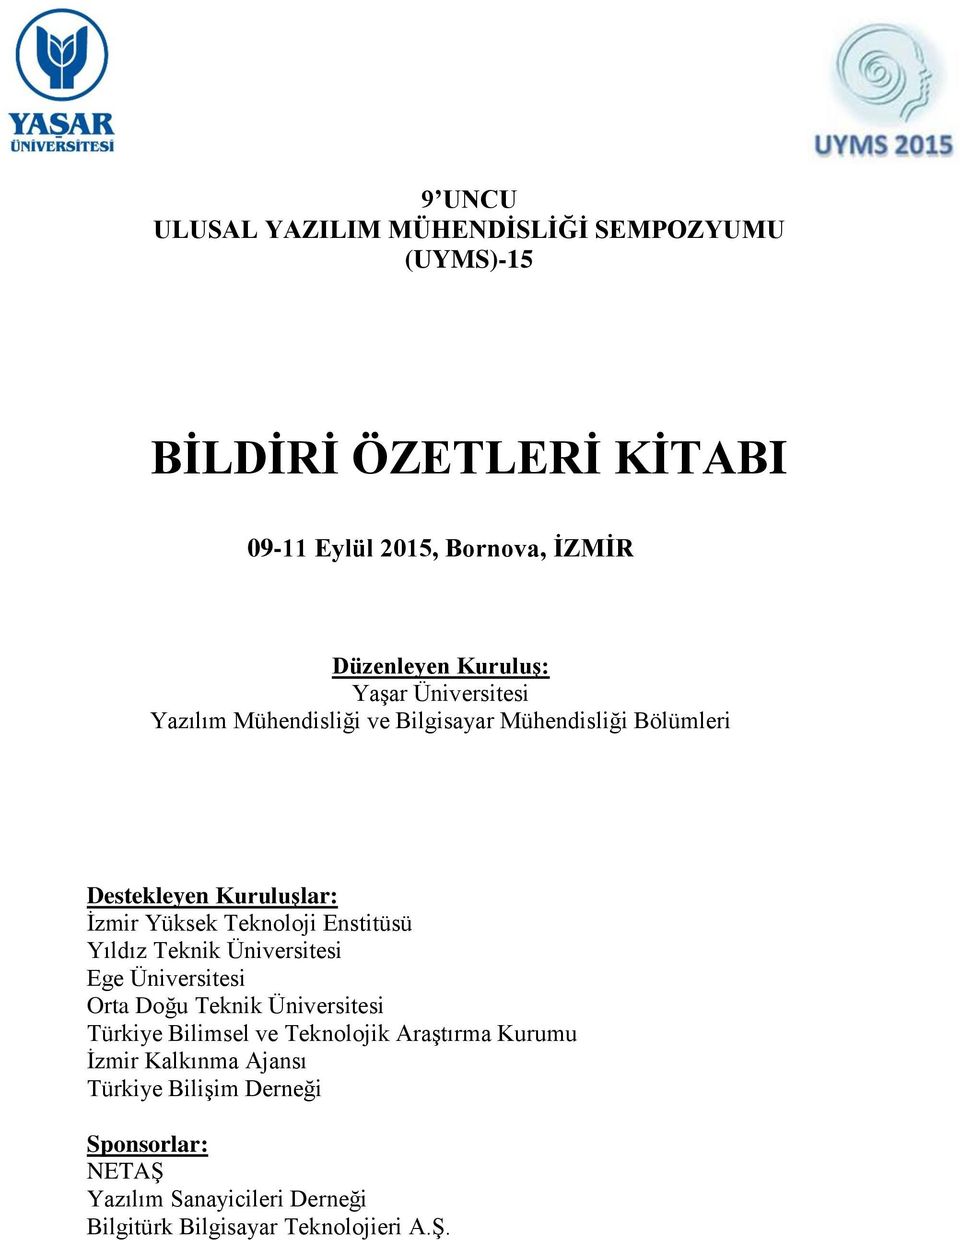 Teknoloji Enstitüsü Yıldız Teknik Üniversitesi Ege Üniversitesi Orta Doğu Teknik Üniversitesi Türkiye Bilimsel ve Teknolojik